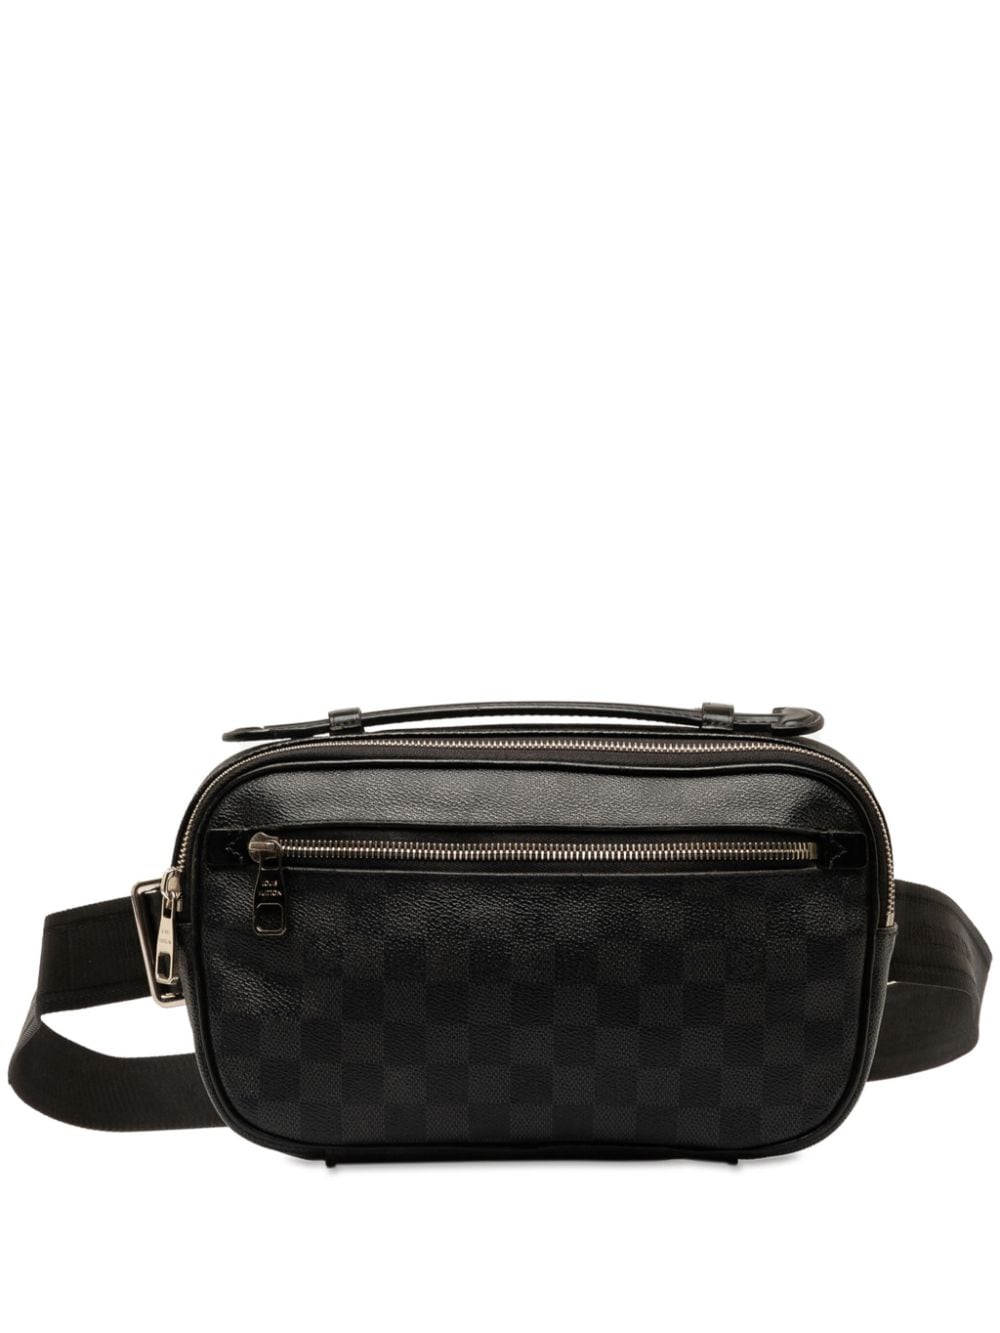 Louis Vuitton Pre-Owned 2014 Ambler belt bag - Black von Louis Vuitton Pre-Owned